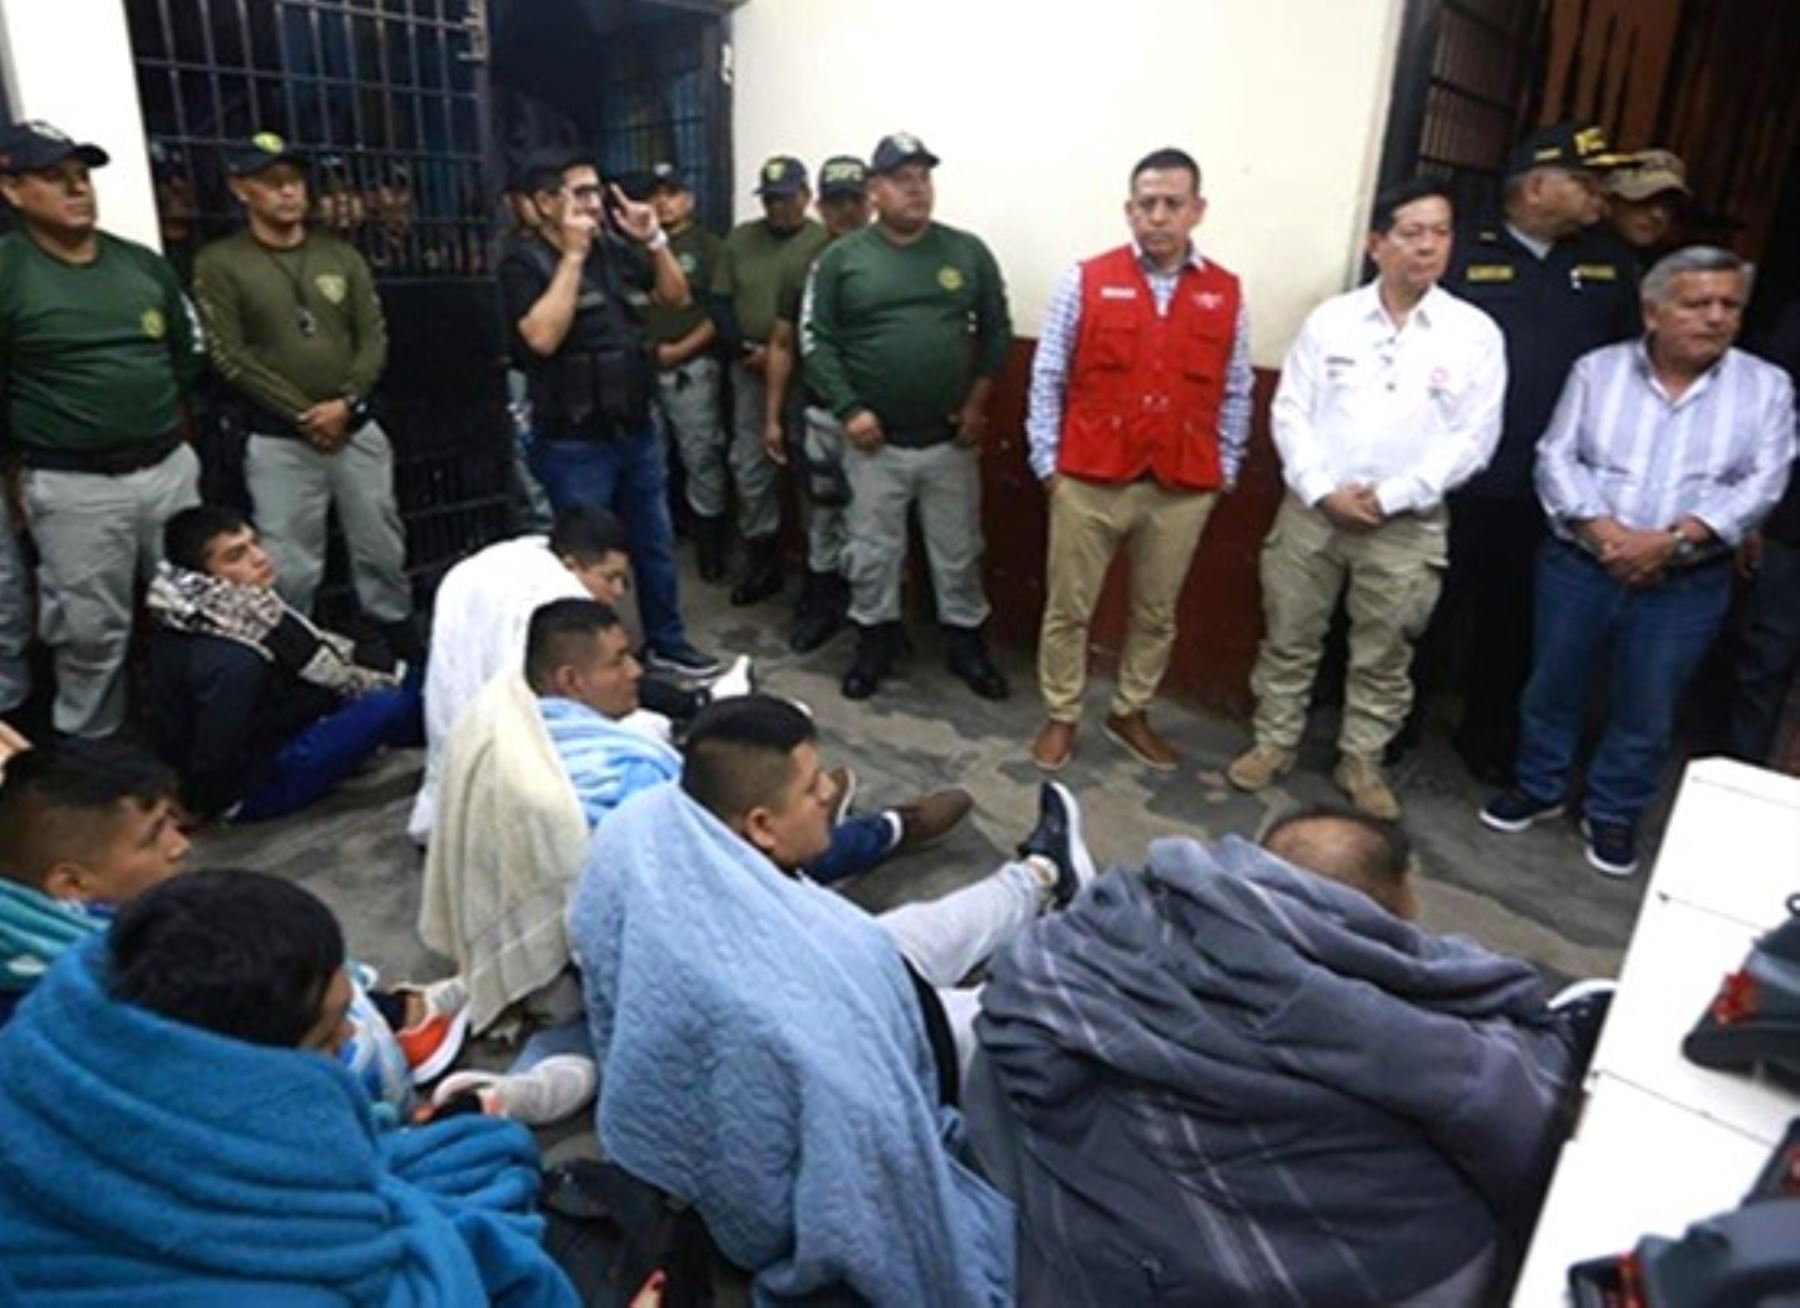 Con presencia de autoridades, encabezadas por el ministro de Justicia, Eduardo Arana, se realizó el traslado de 13 internos de alta peligrosidad del penal El Milagro de Trujillo a otros establecimientos de máxima seguridad.